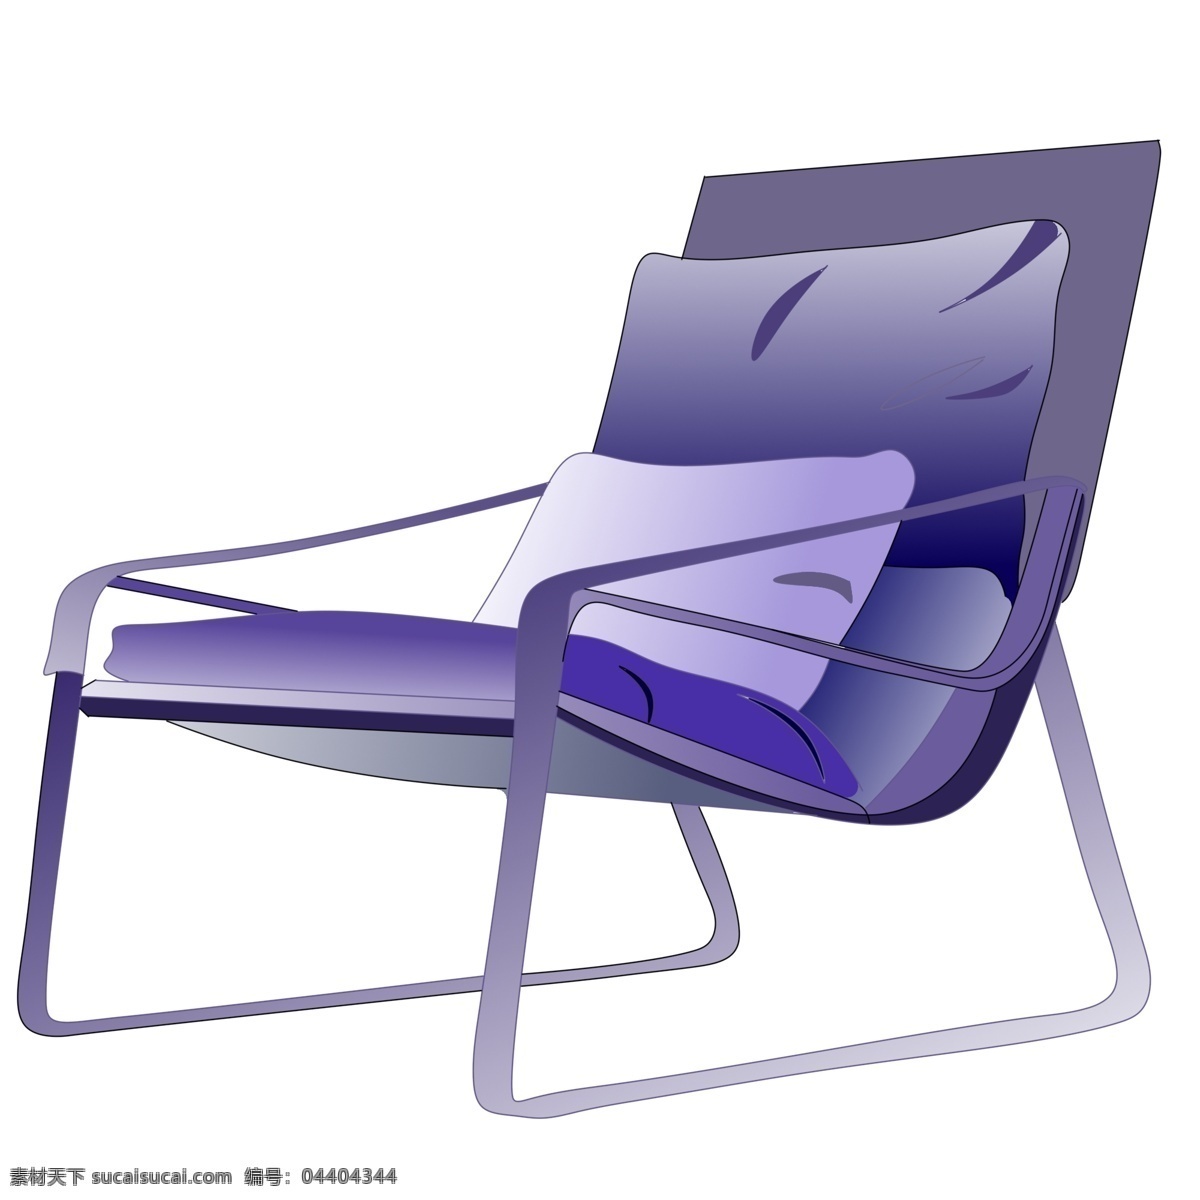 紫色 卡通 休闲椅 插画 紫色桌椅 椅子 卡通椅子插画 紫色椅子插画 桌椅 休闲桌椅 椅子插画 创意椅子